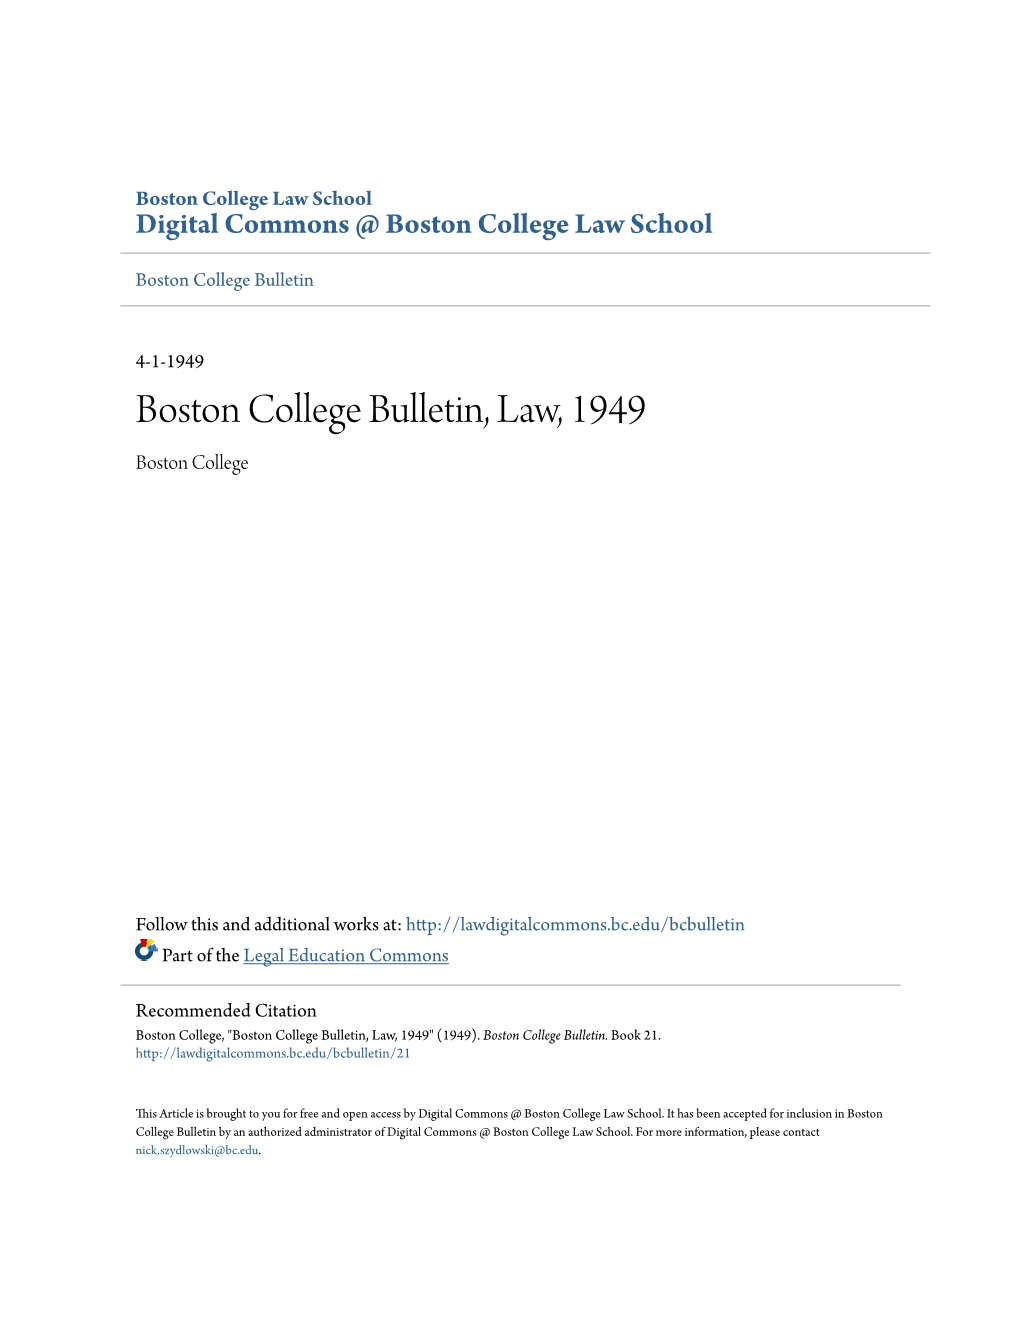 Boston College Bulletin, Law, 1949 Boston College